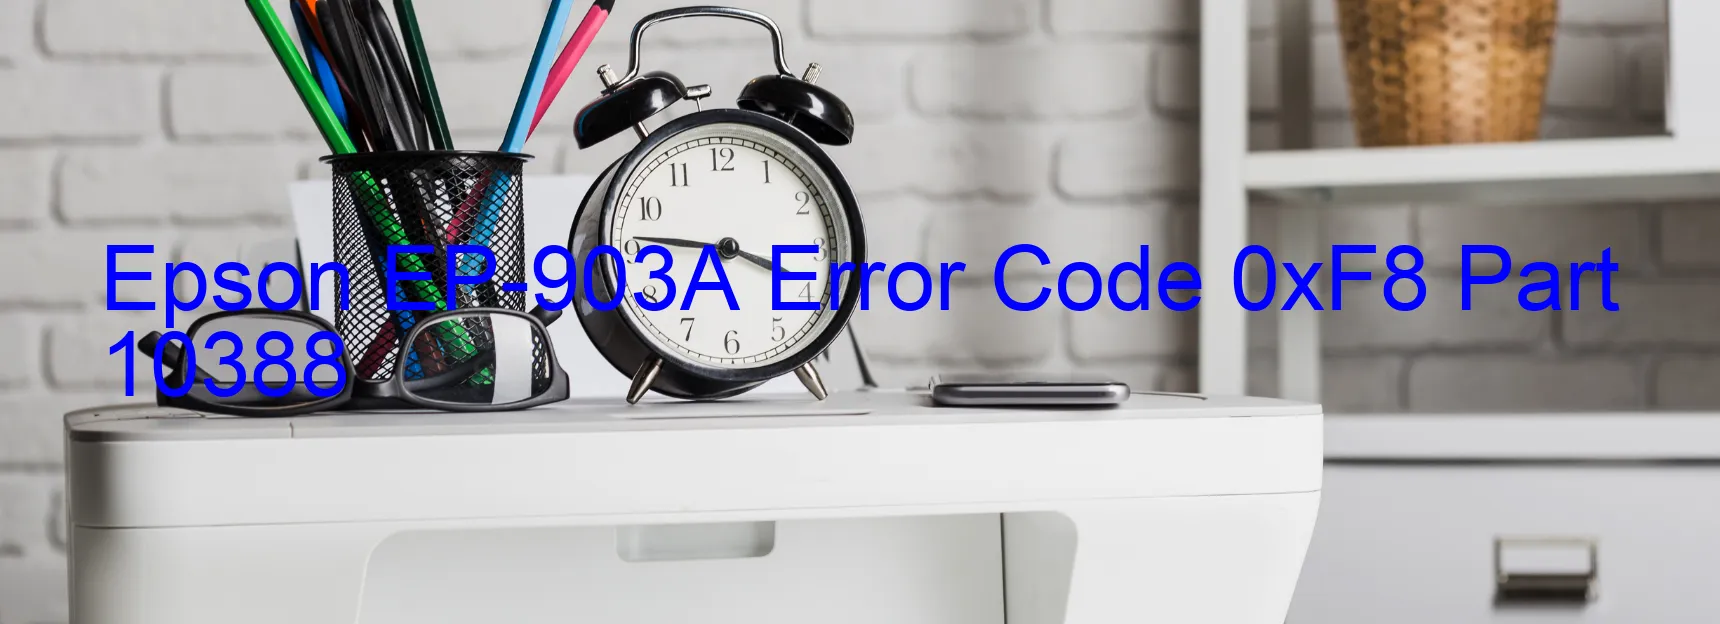 Epson EP-903A Error Code 0xF8 Part 10388